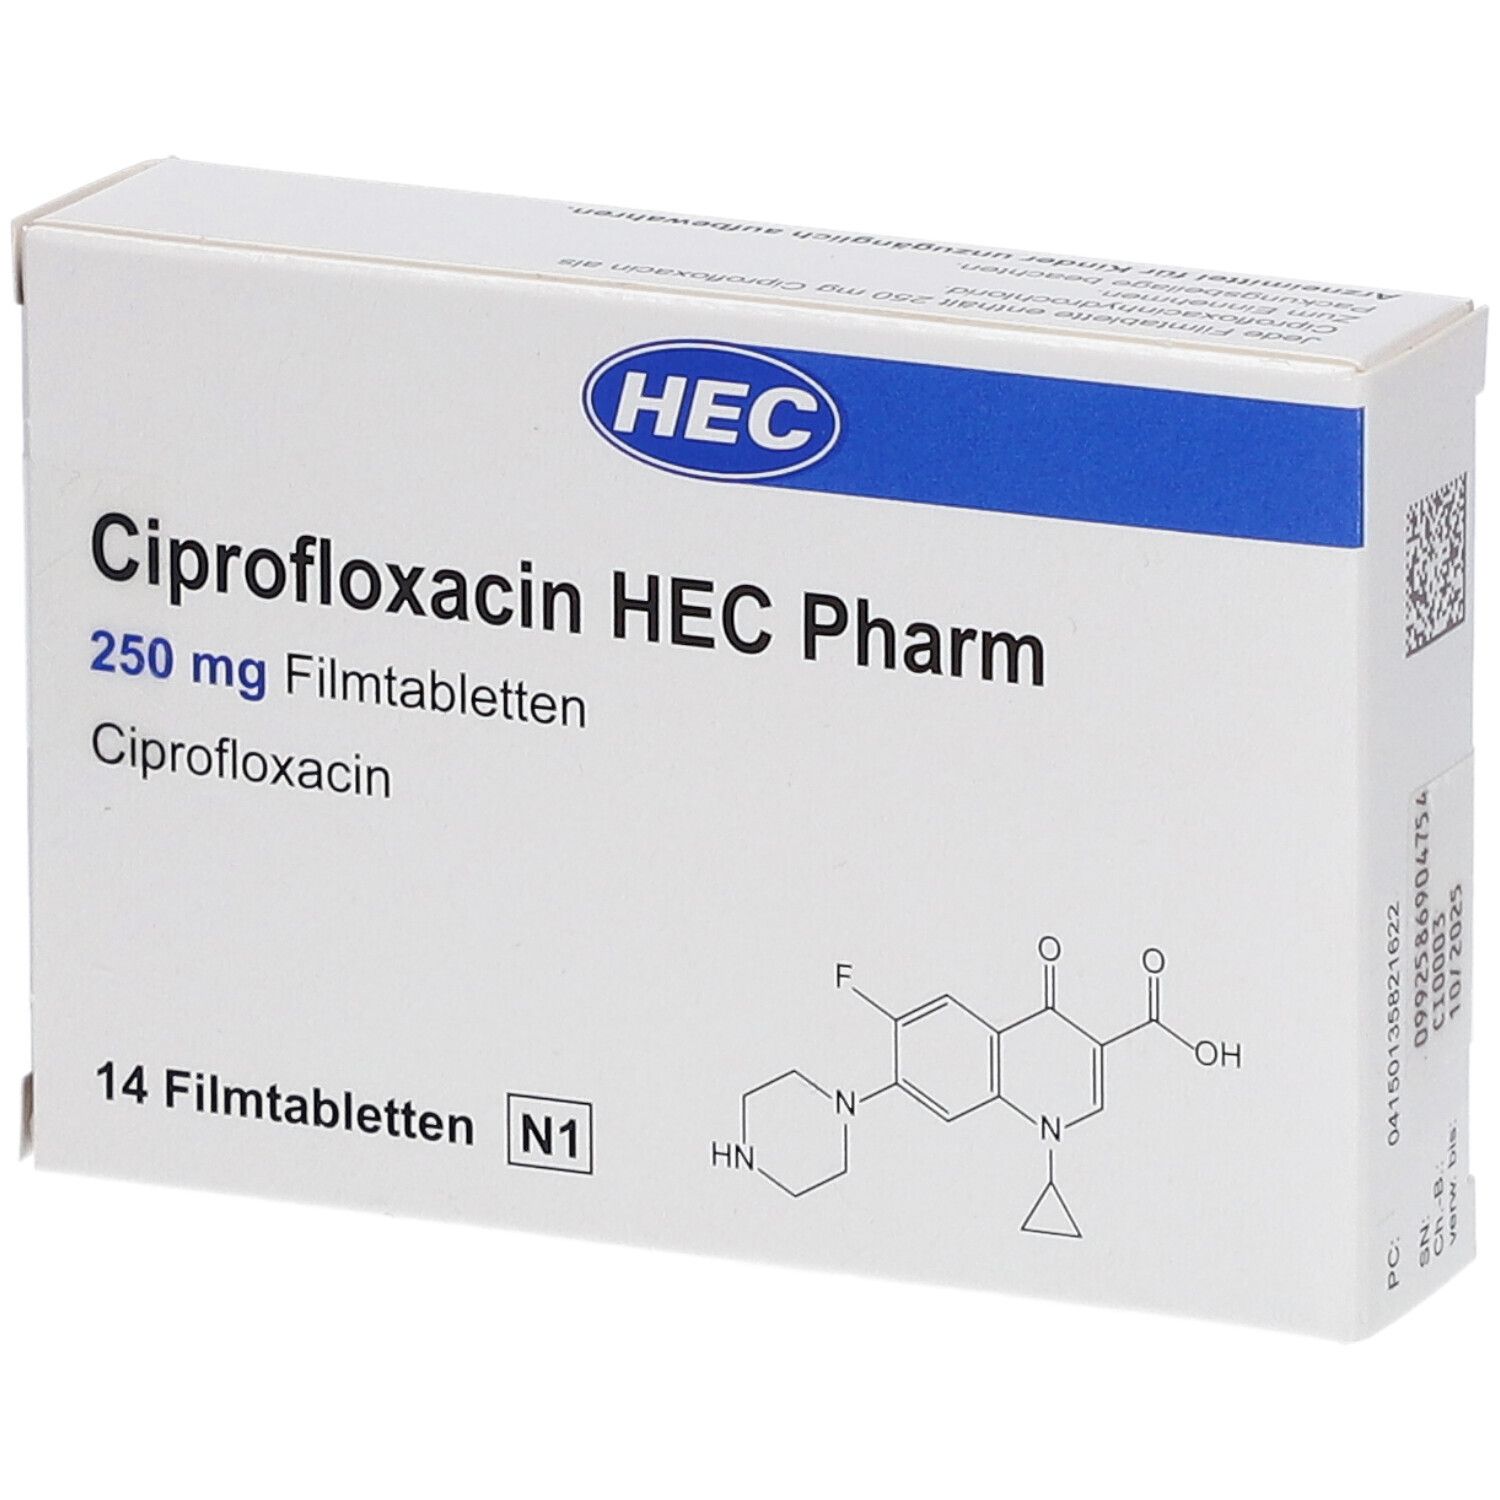 Ciprofloxacin HEC Pharm 250 mg